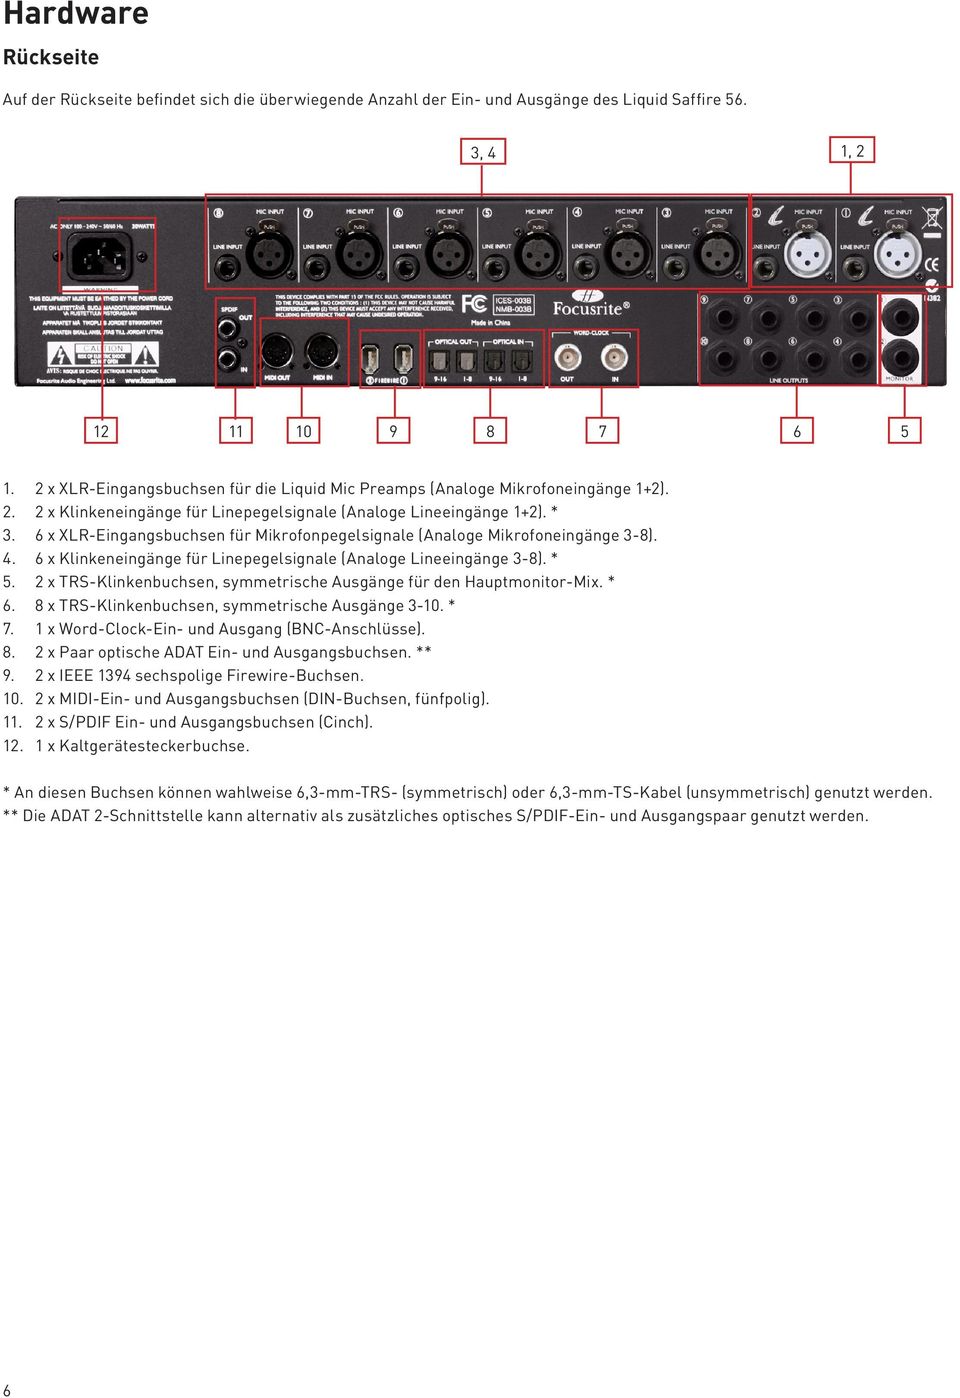 6 x XLR-Eingangsbuchsen für Mikrofonpegelsignale (Analoge Mikrofoneingänge 3-8). 4. 6 x Klinkeneingänge für Linepegelsignale (Analoge Lineeingänge 3-8). * 5.